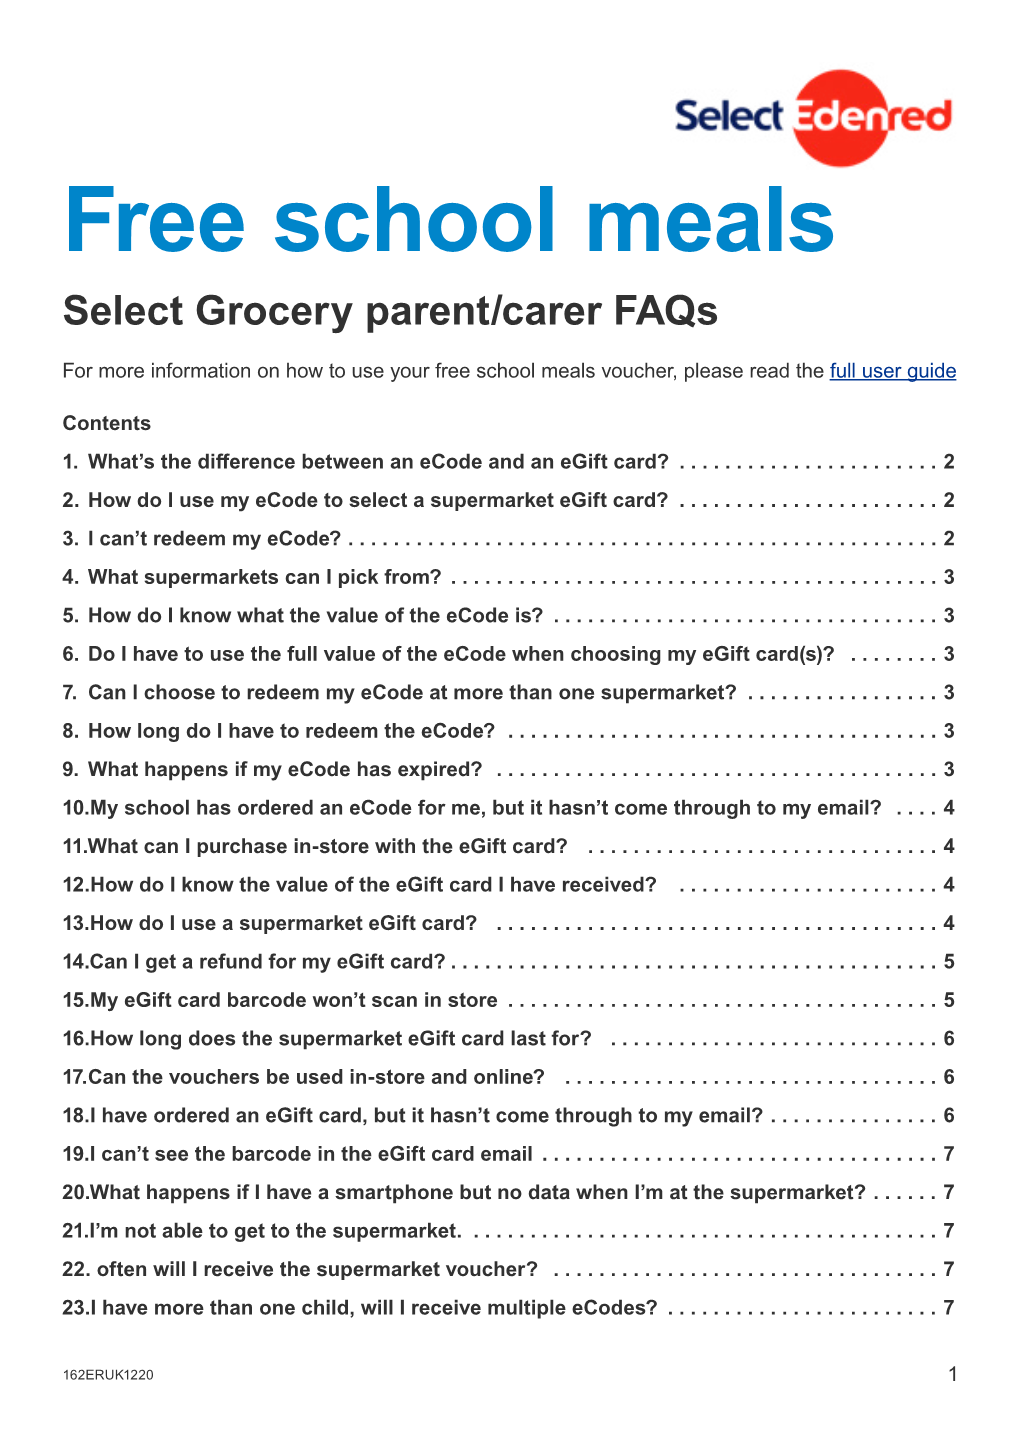 Free School Meals FAQ's